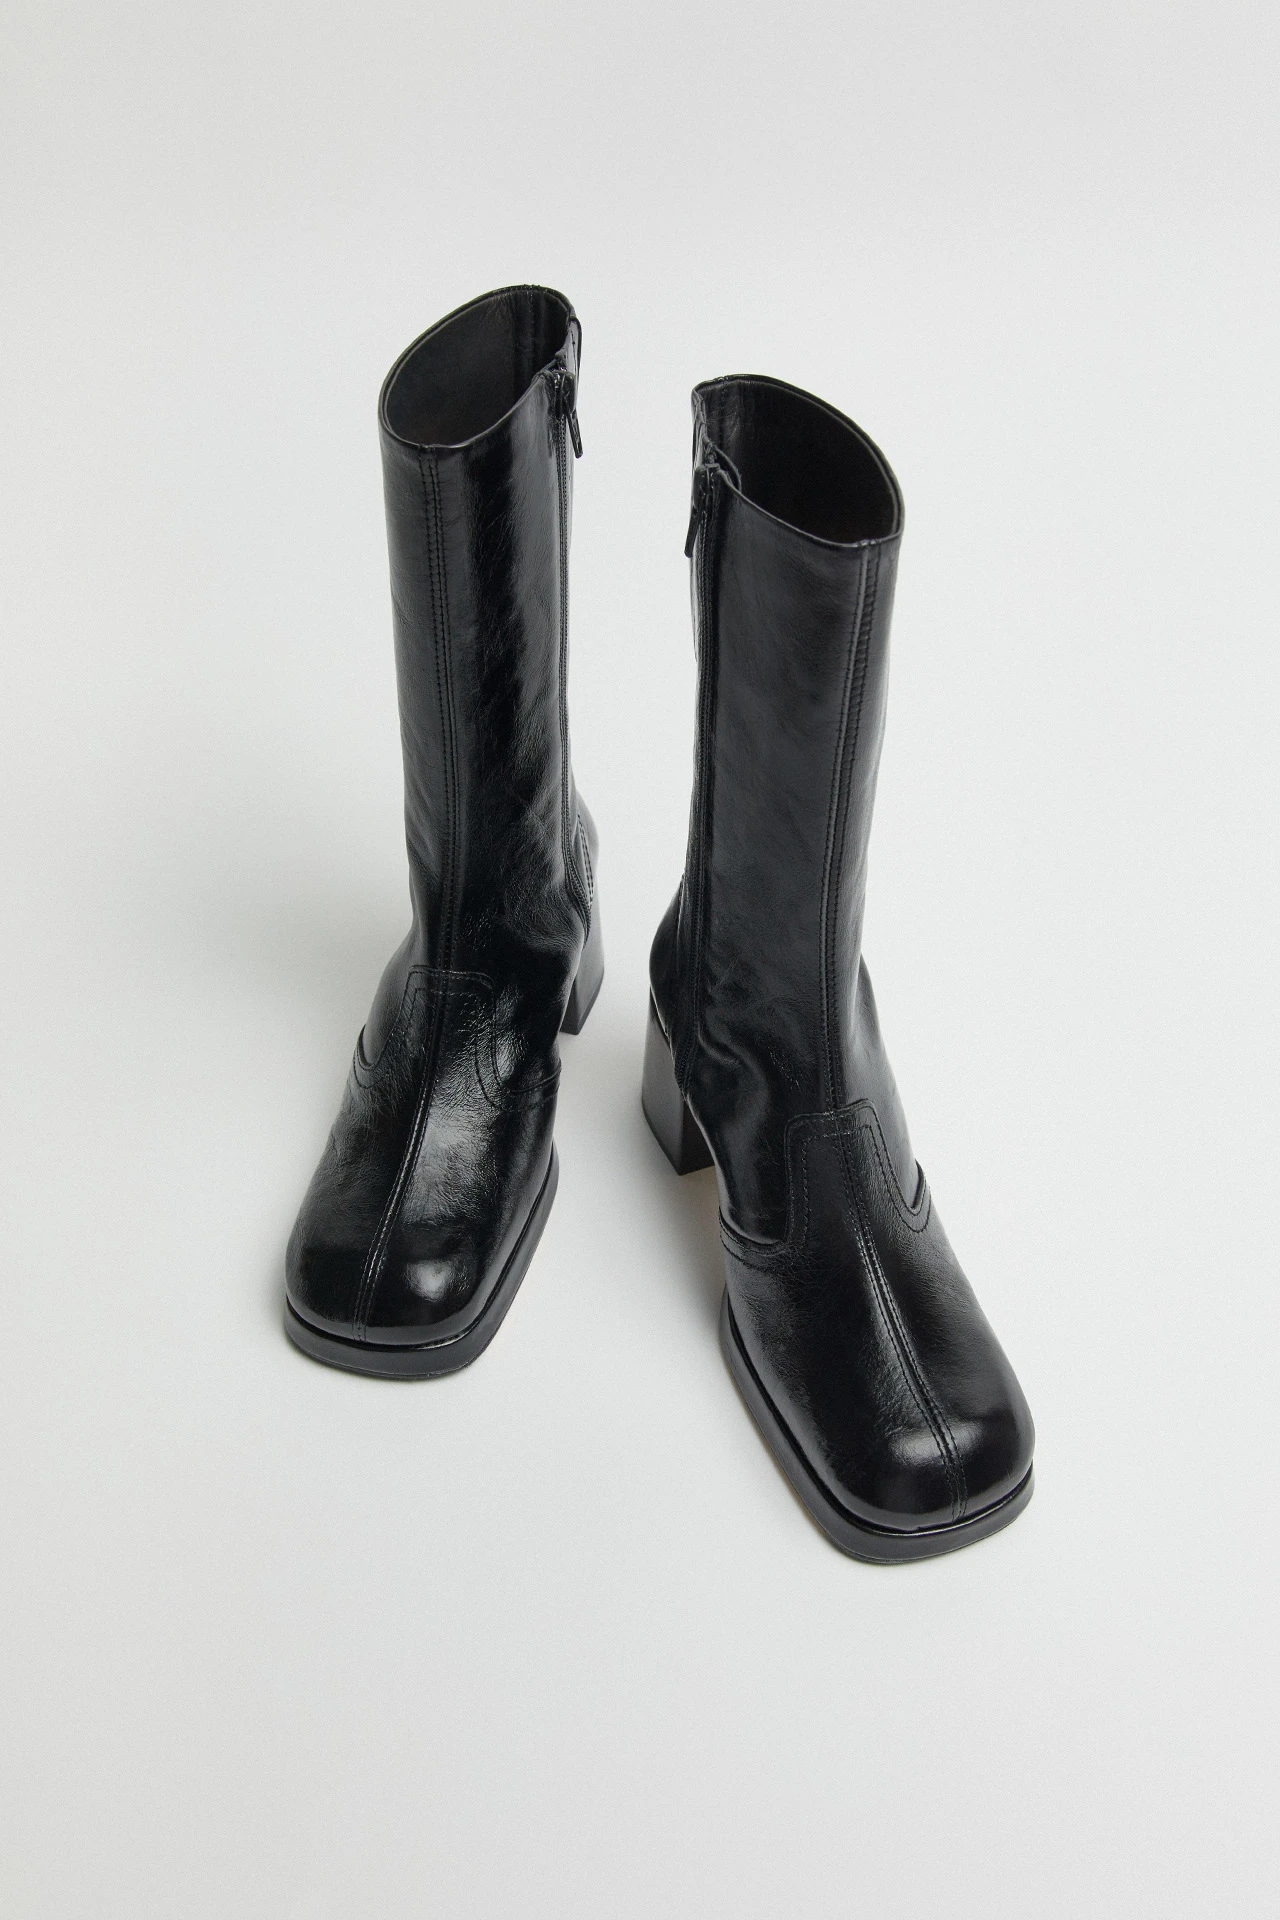 Miista-cass-black-crinkle-boots-04